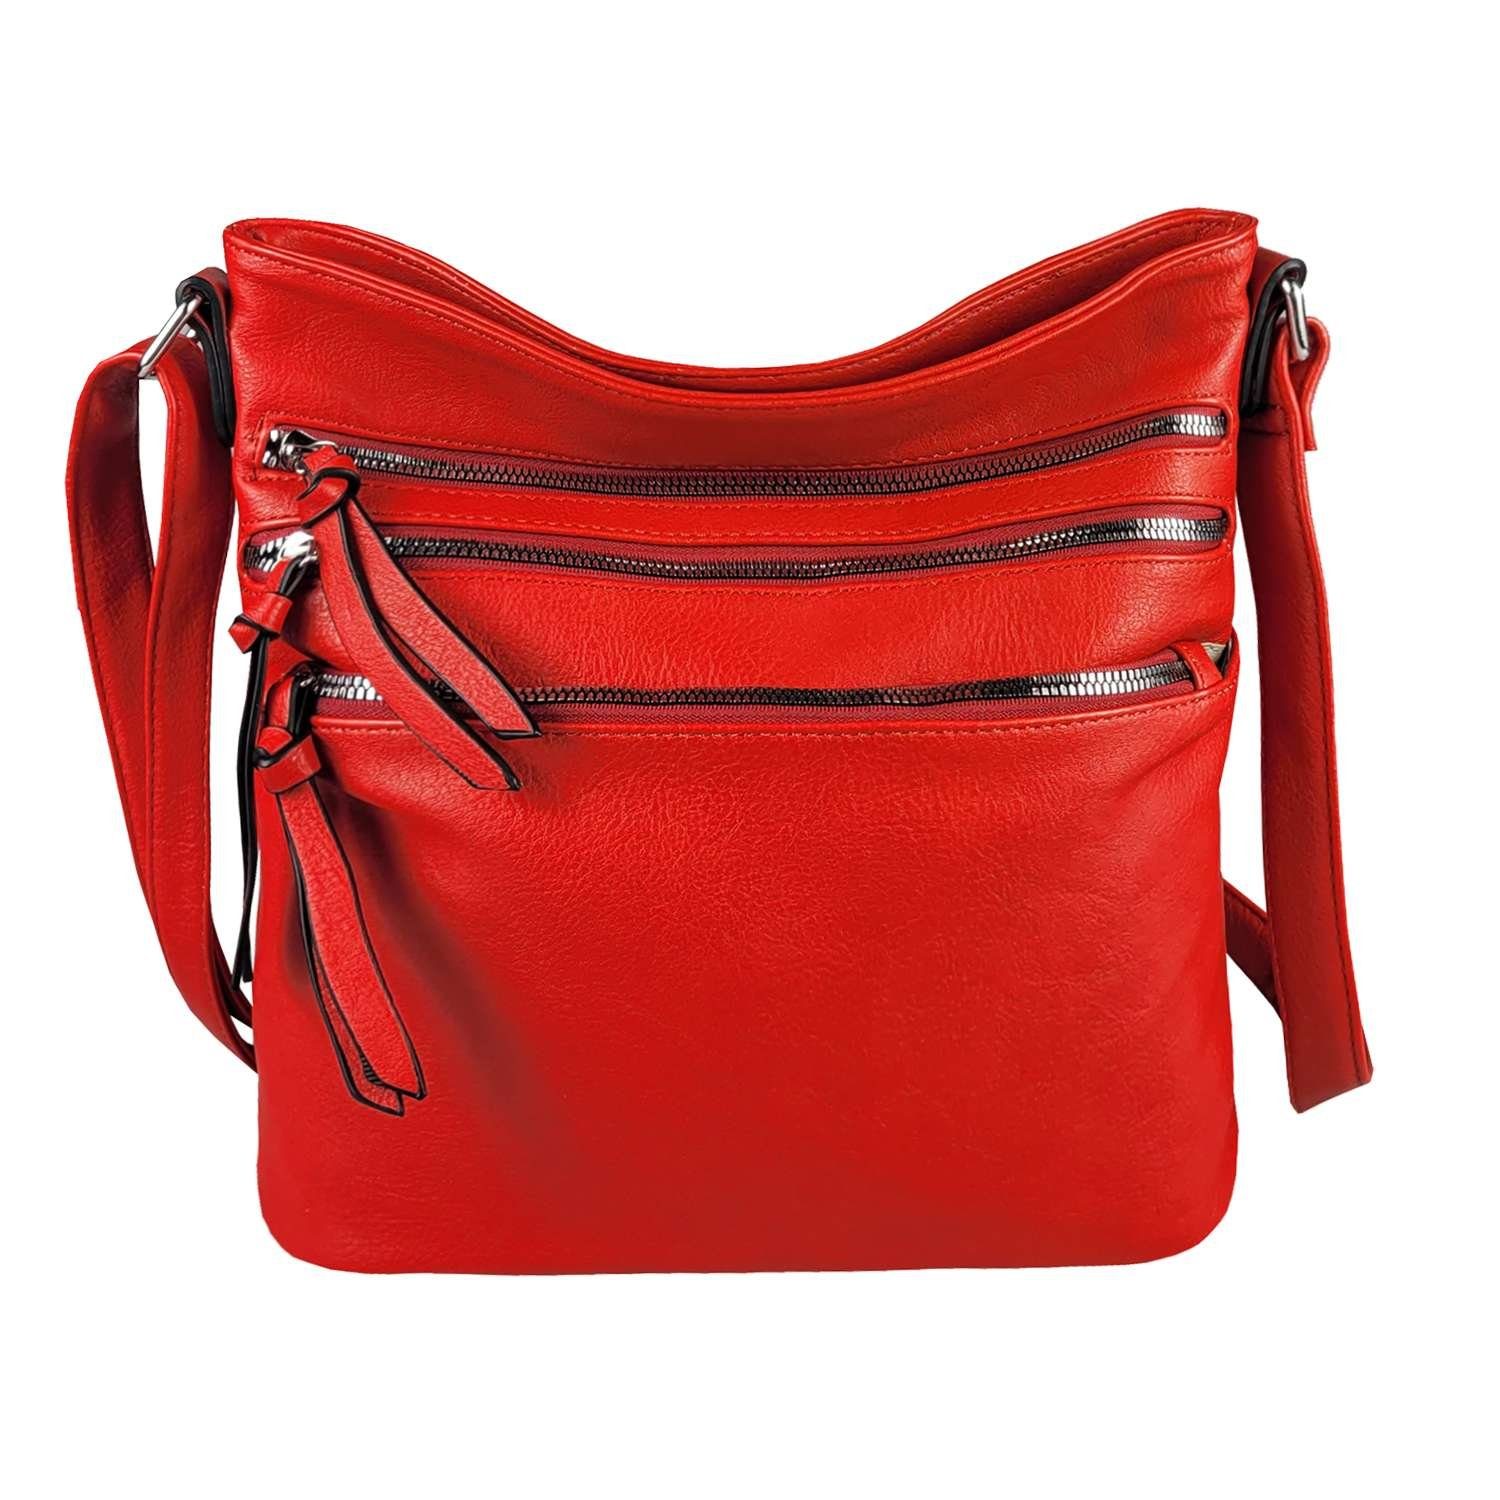 Handtasche in rot online kaufen | OTTO